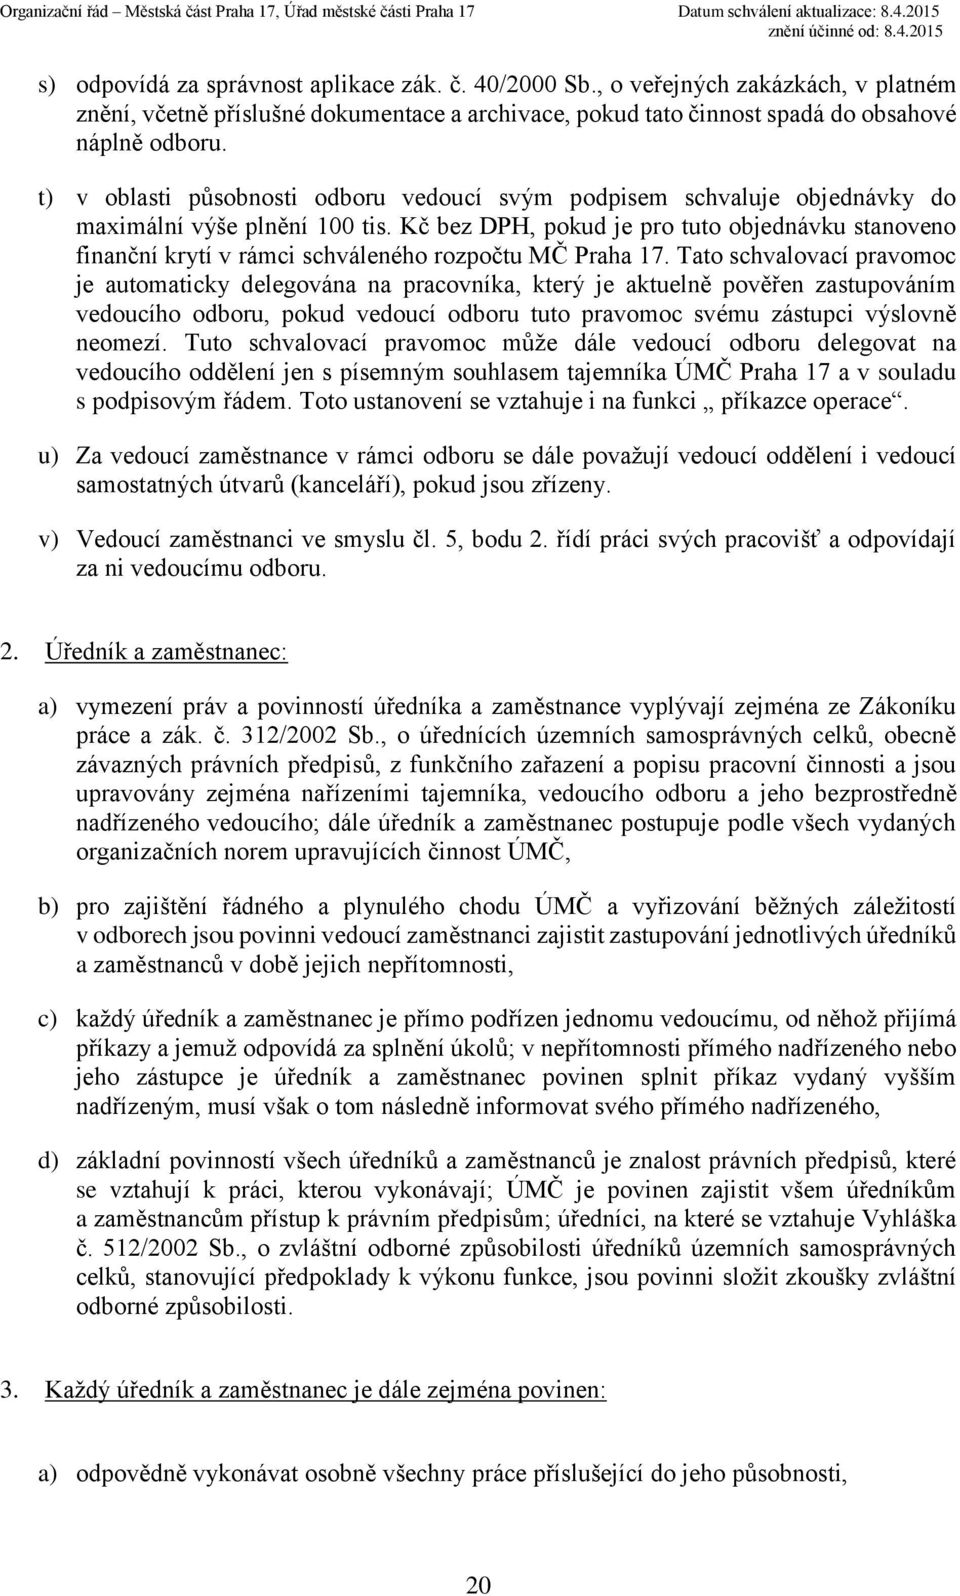 Kč bez DPH, pokud je pro tuto objednávku stanoveno finanční krytí v rámci schváleného rozpočtu MČ Praha 17.